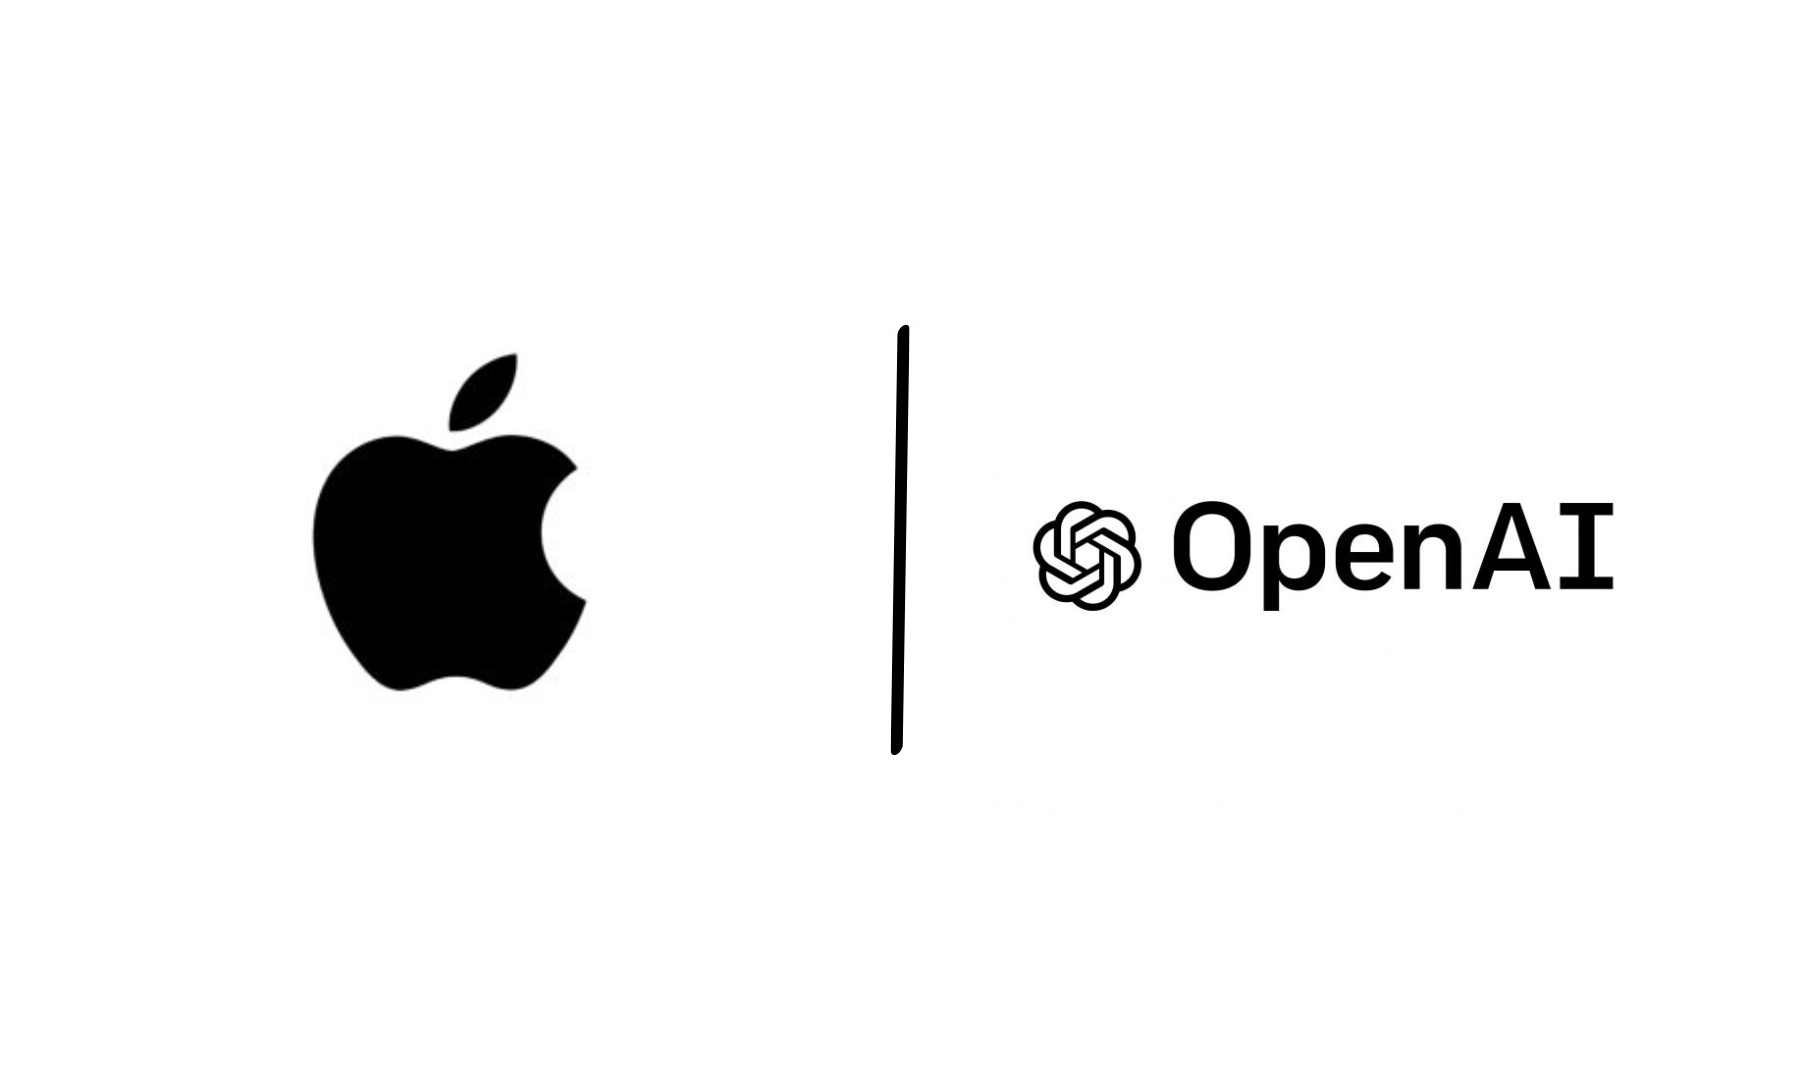 取代 Siri？新 iPhone 或将引入 OpenAI 的生成式 AI 功能